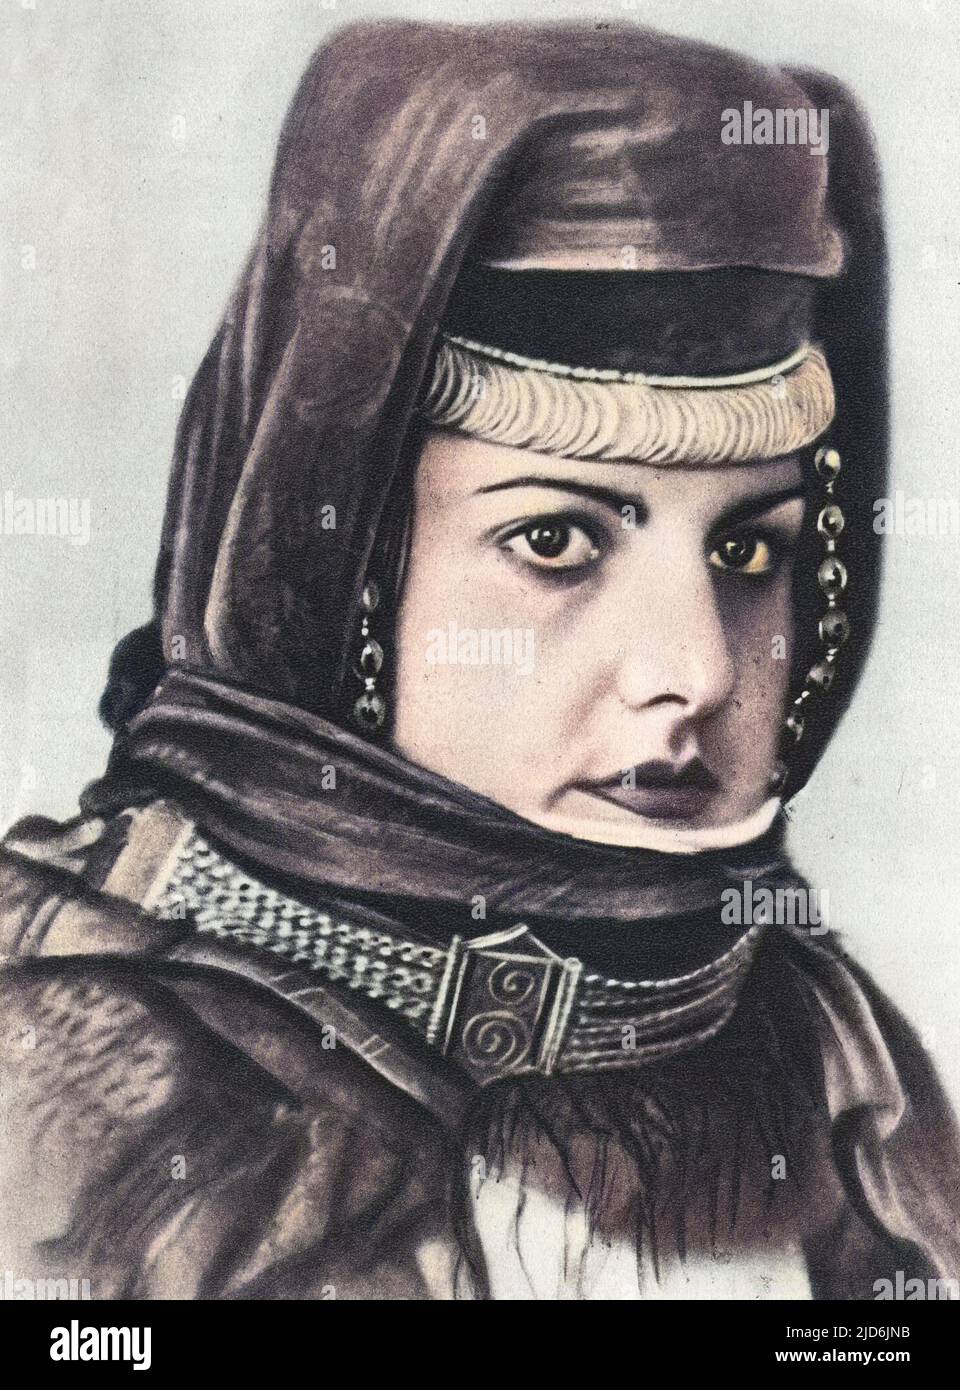 Schönes fotografisches Porträt aus Sowjetischem Armenien - Kollektivfrau - armenischer Bauer. Kolorierte Version von: 10645499 Datum: Ca. 1930s Stockfoto